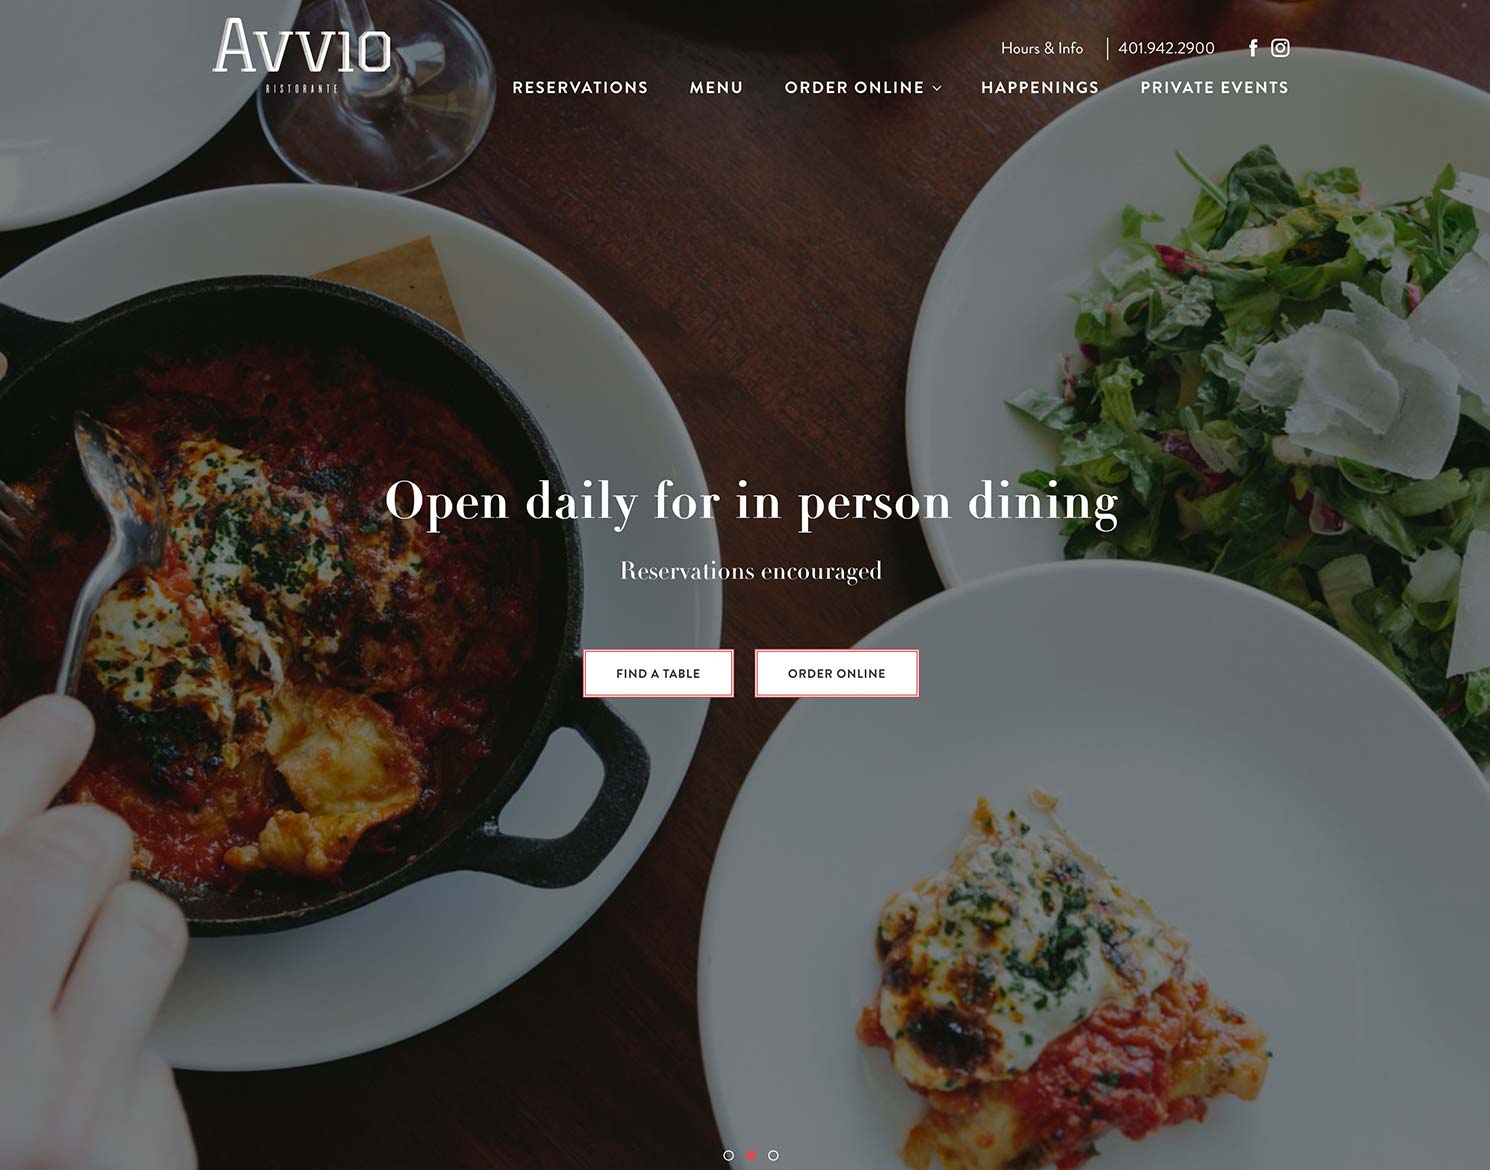 Newport Restaurant Group website design for Avvio